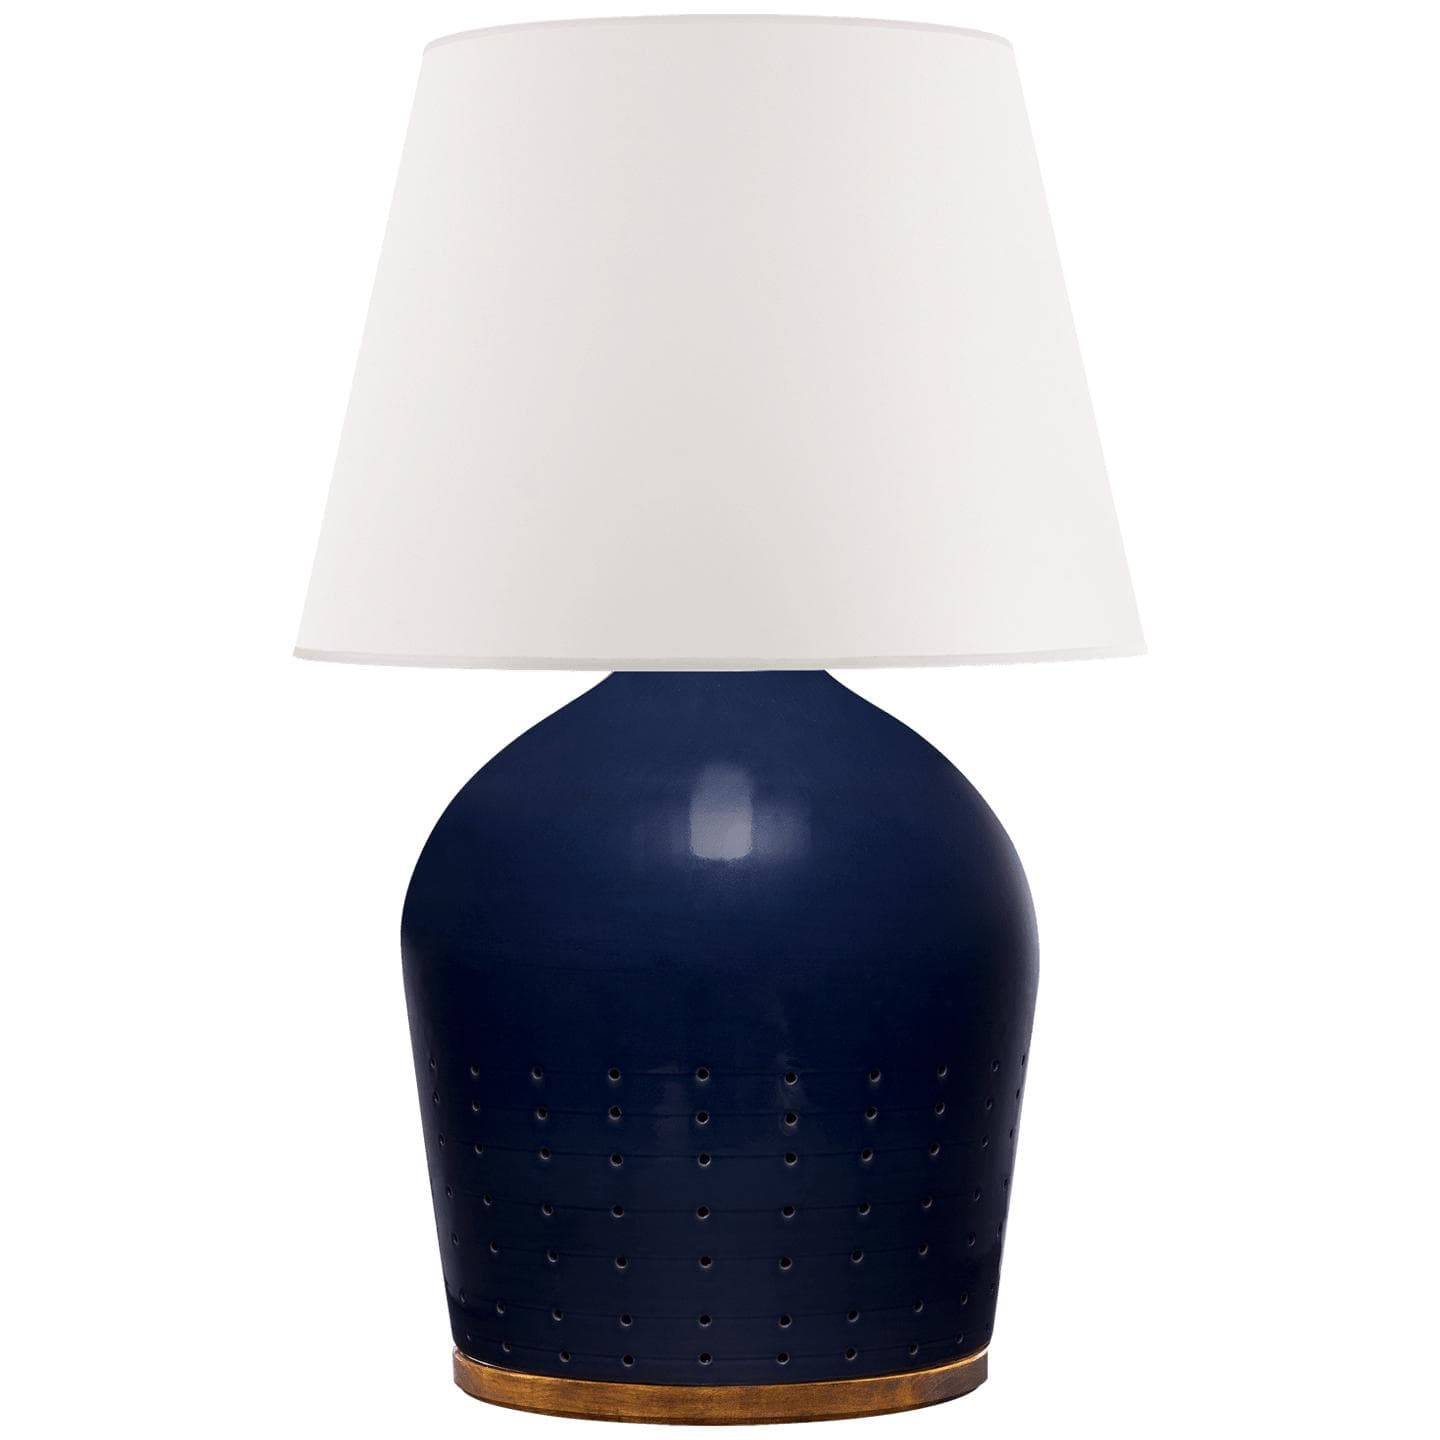 Купить Настольная лампа Halifax Small Table Lamp в интернет-магазине roooms.ru